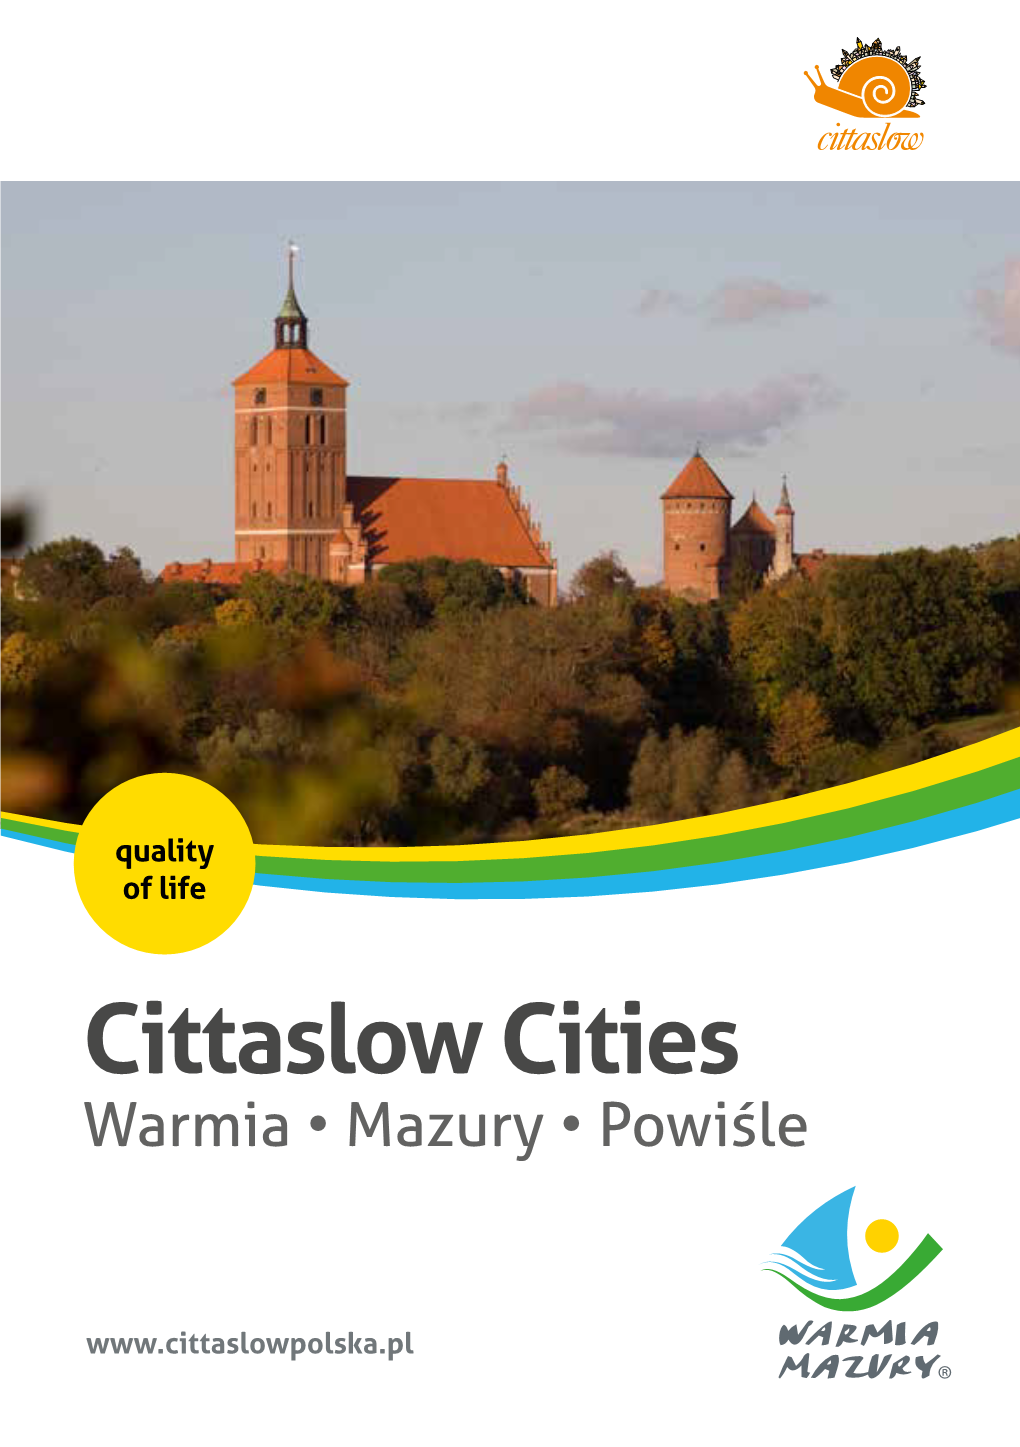 Cittaslow Cities Warmia • Mazury • Powiśle